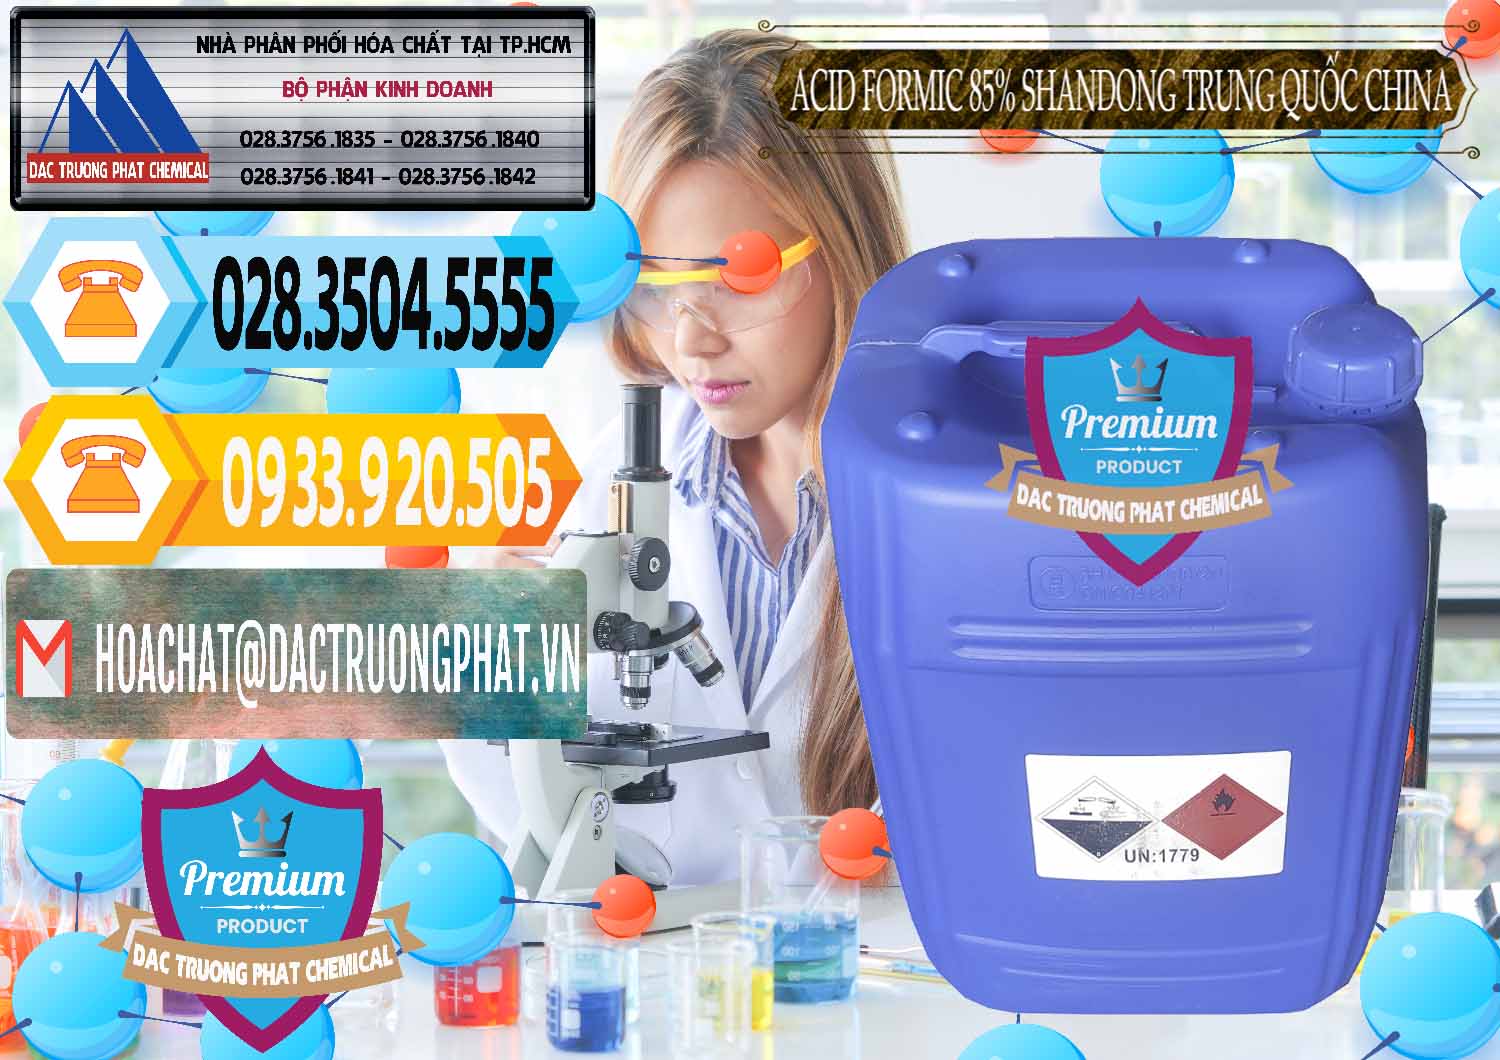 Nơi bán & cung cấp Acid Formic - Axit Formic 85% Shandong Trung Quốc China - 0235 - Nhà cung ứng ( phân phối ) hóa chất tại TP.HCM - hoachattayrua.net